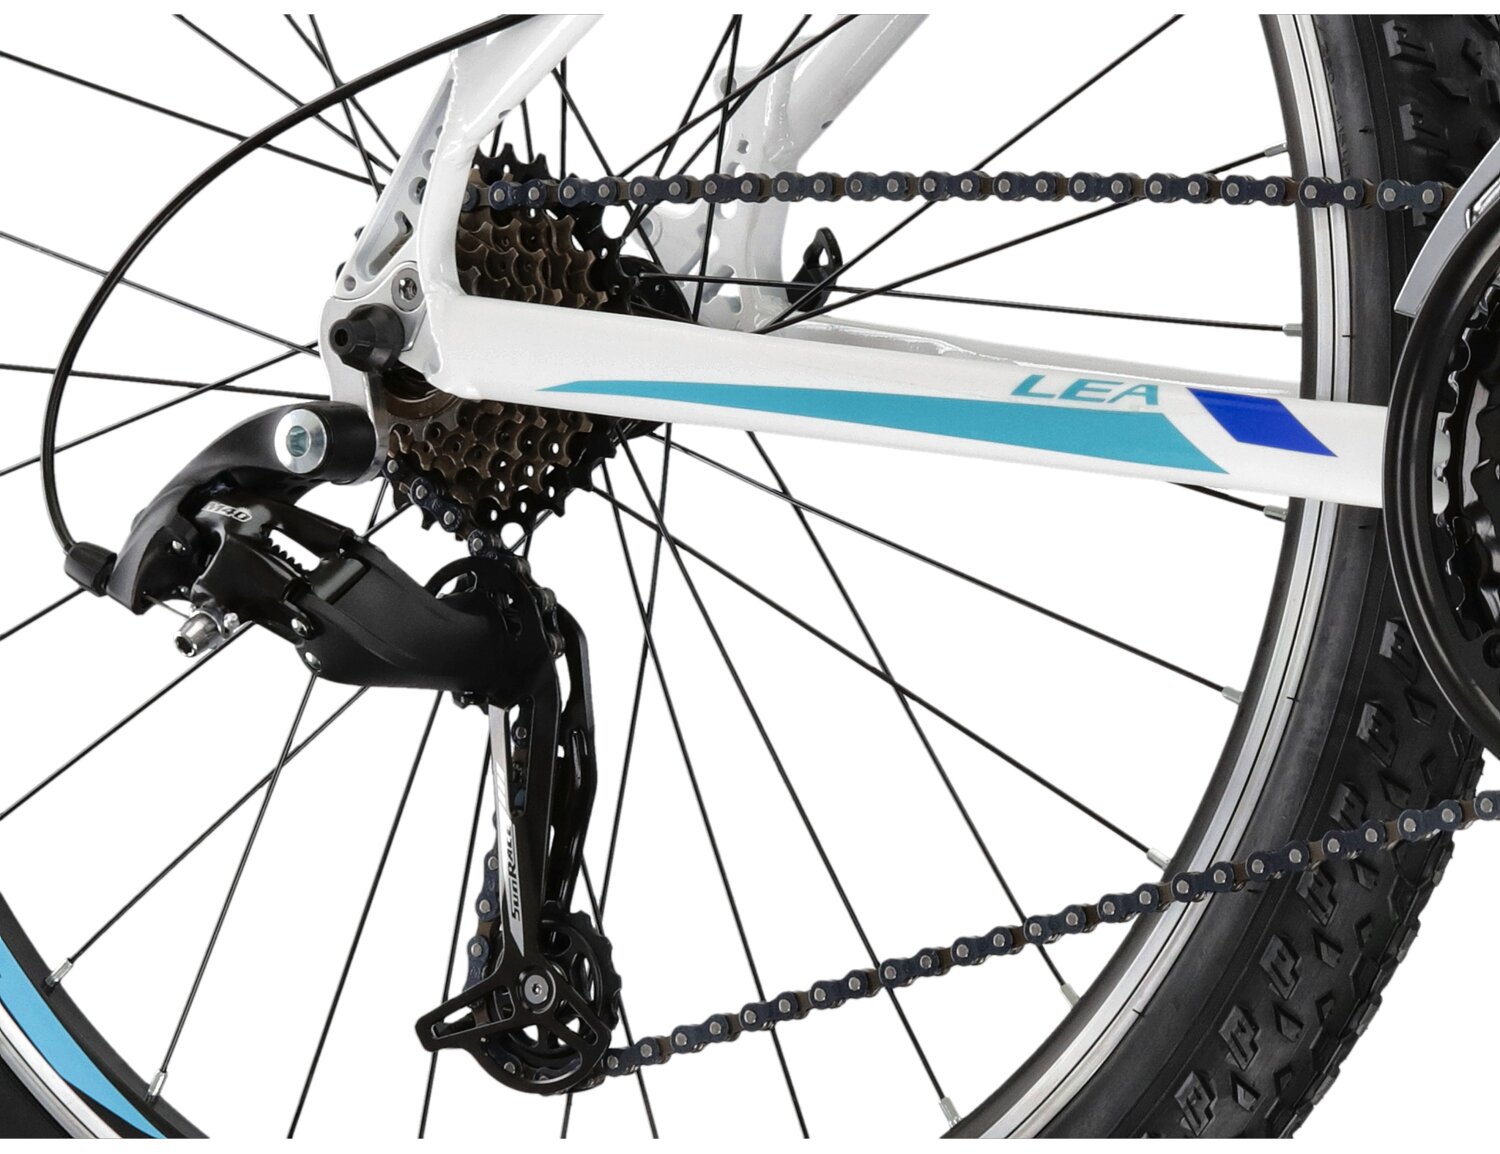  Tylna siedmiobiegowa przerzutka sunrace RDM41 oraz hamulce v-brake w damskim rowerze górskim MTB Woman KROSS Lea 1.1 SR